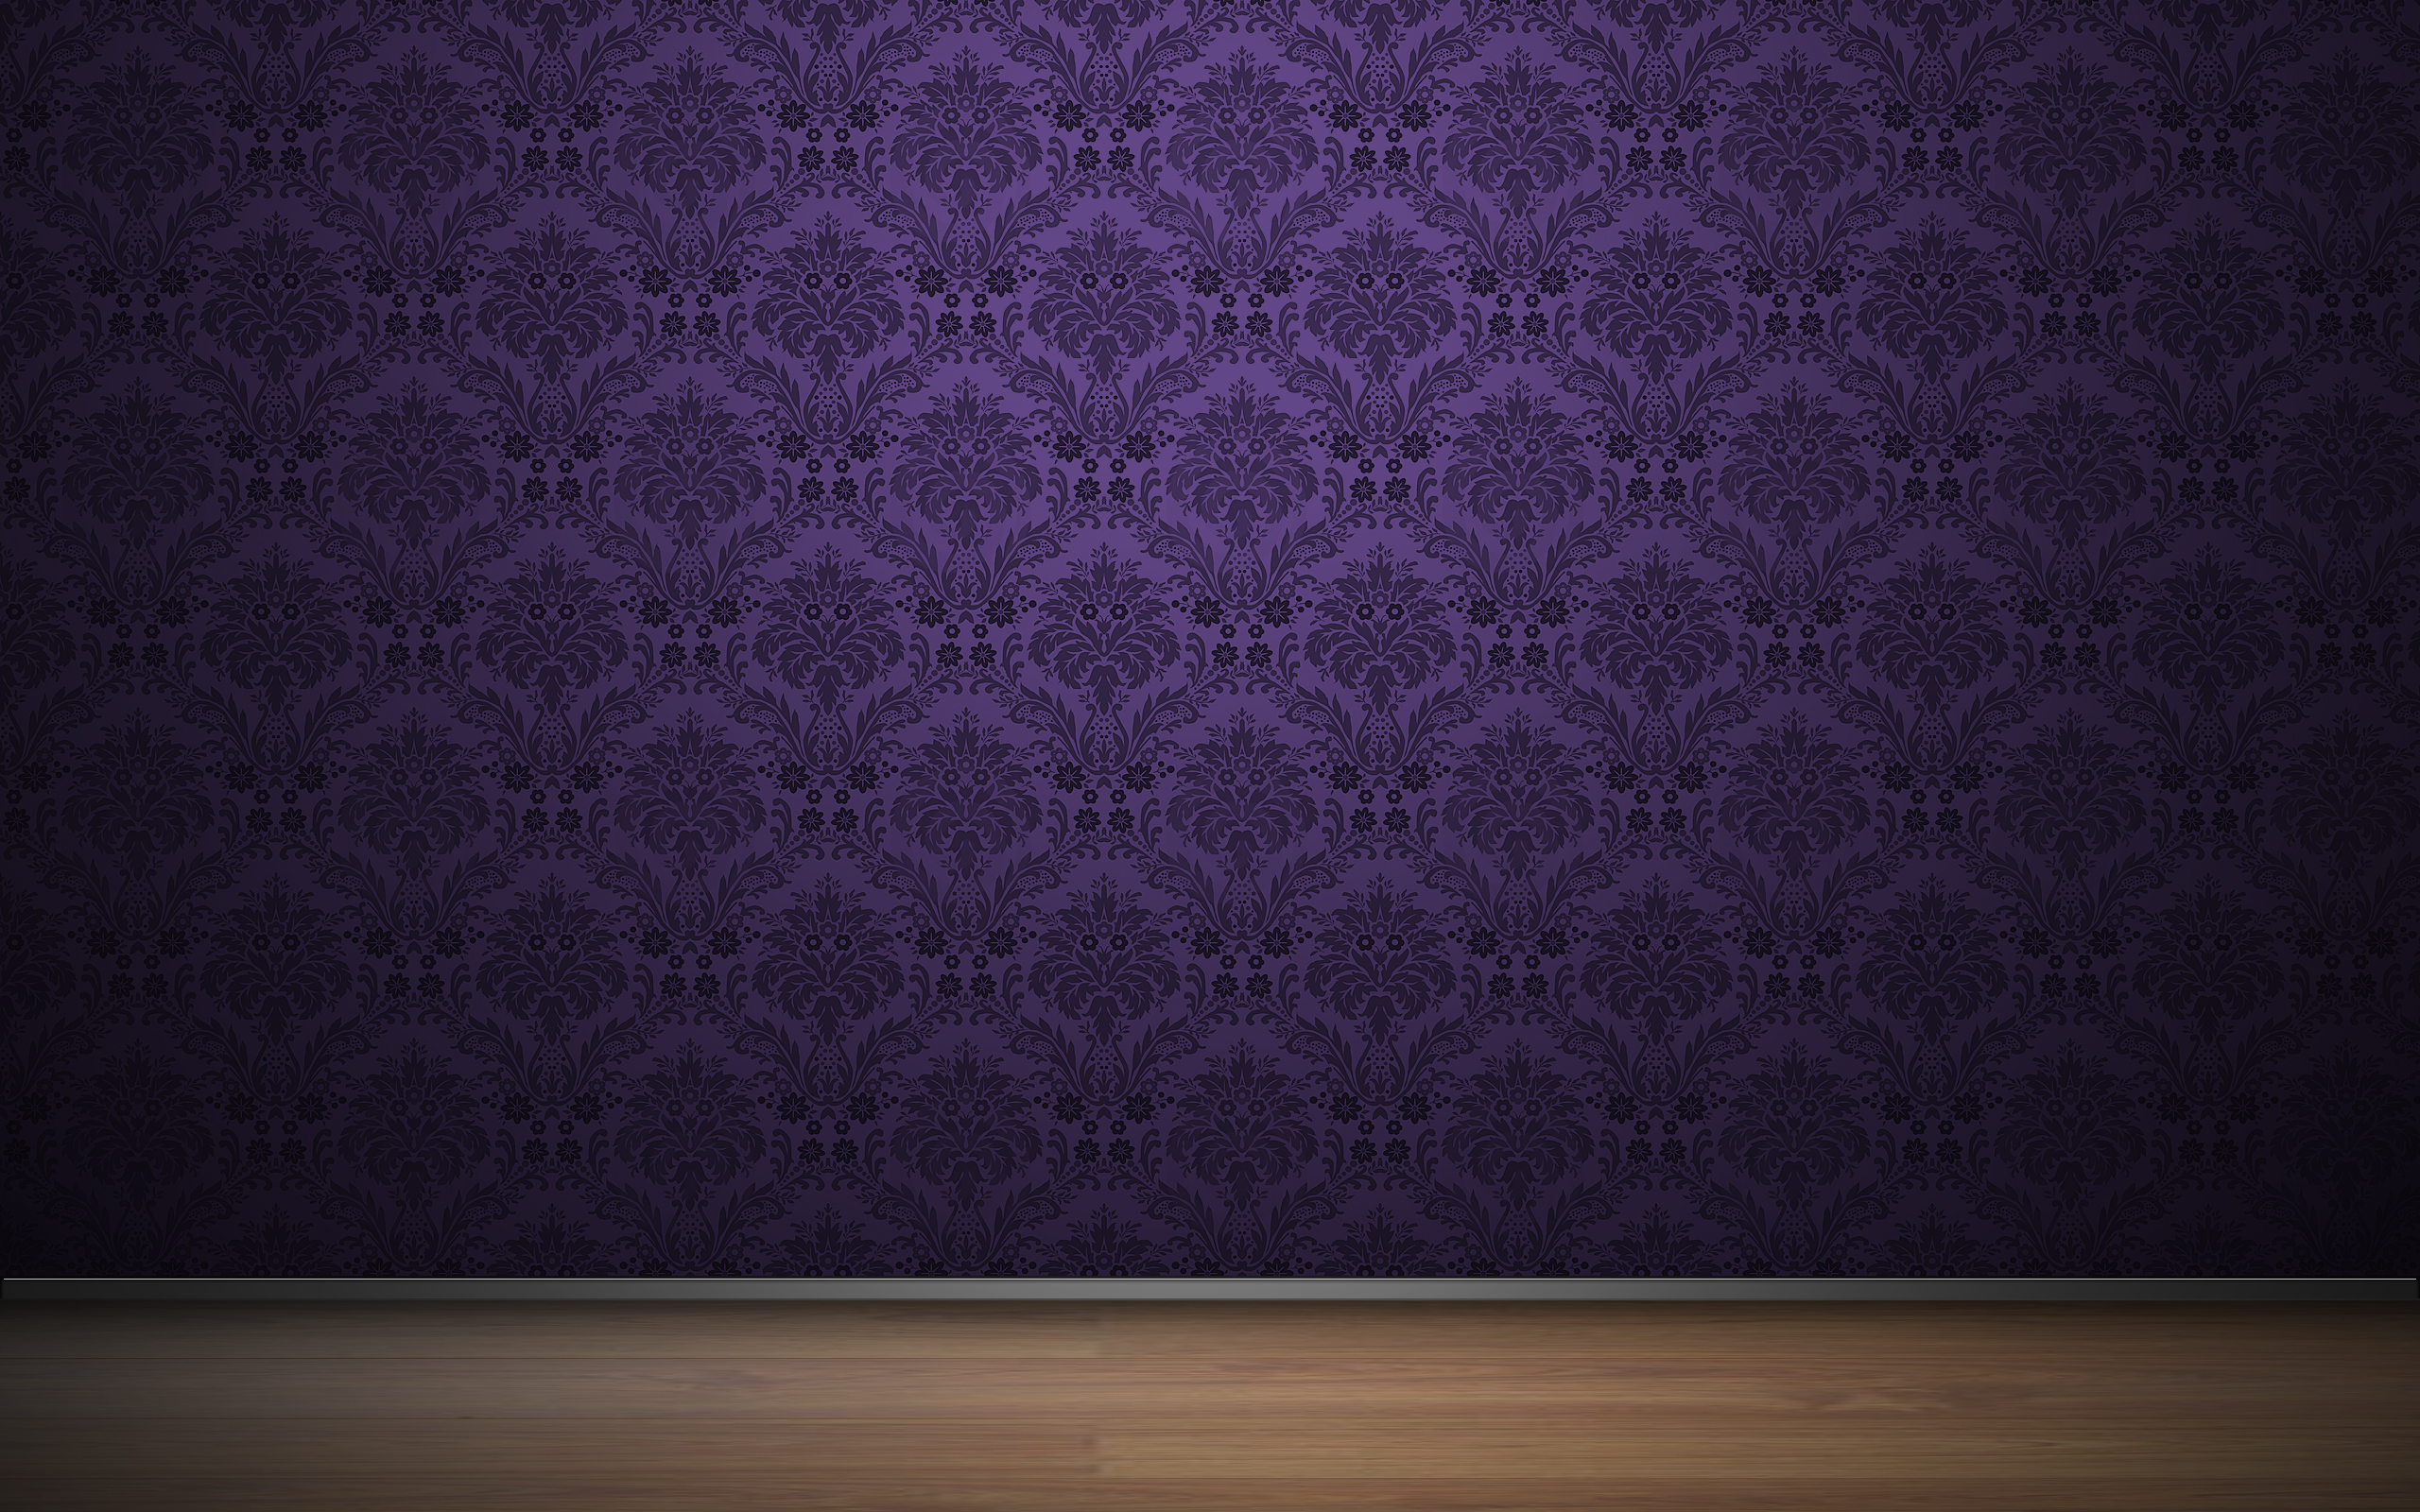 Обои с вырезом. Обои сиреневые для стен. Фиолетовые обои для стен. Фон с узорами. Текстурные обои для стен.